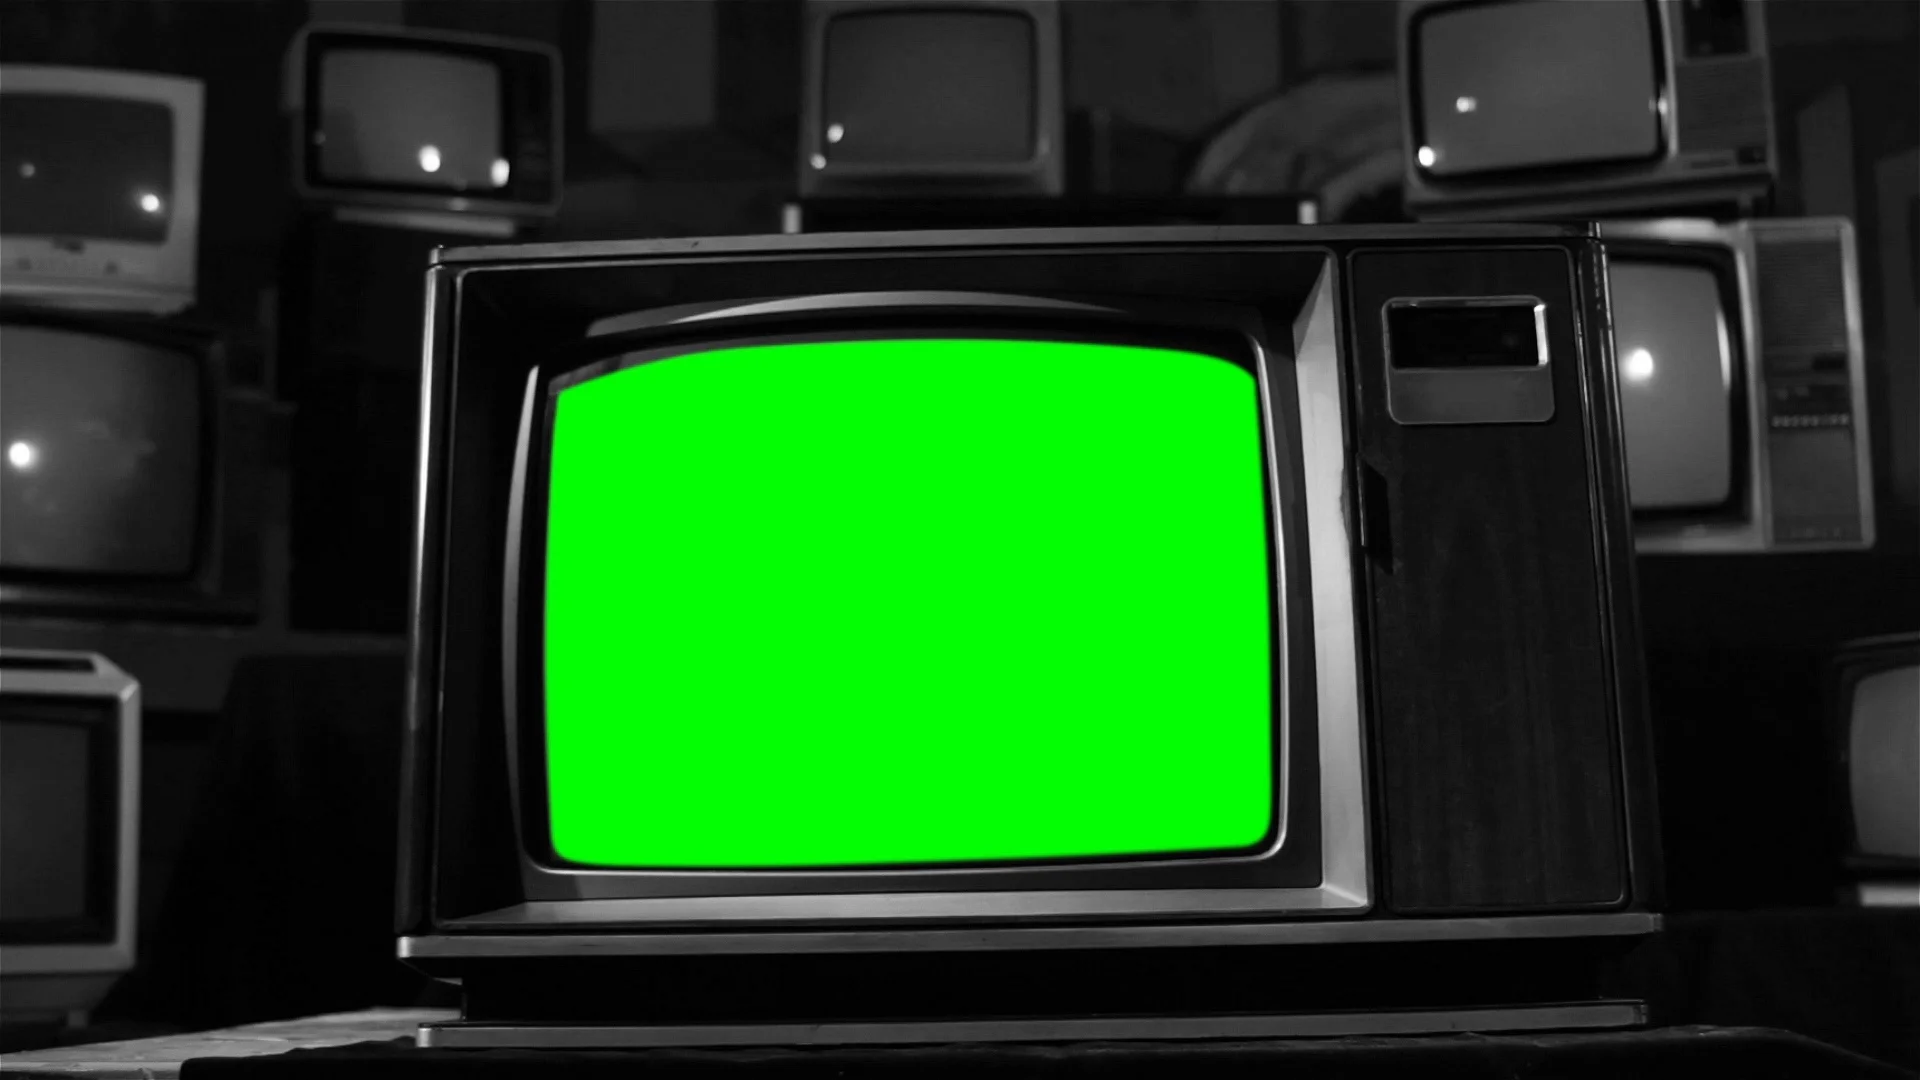 Телевизор с зеленым экраном